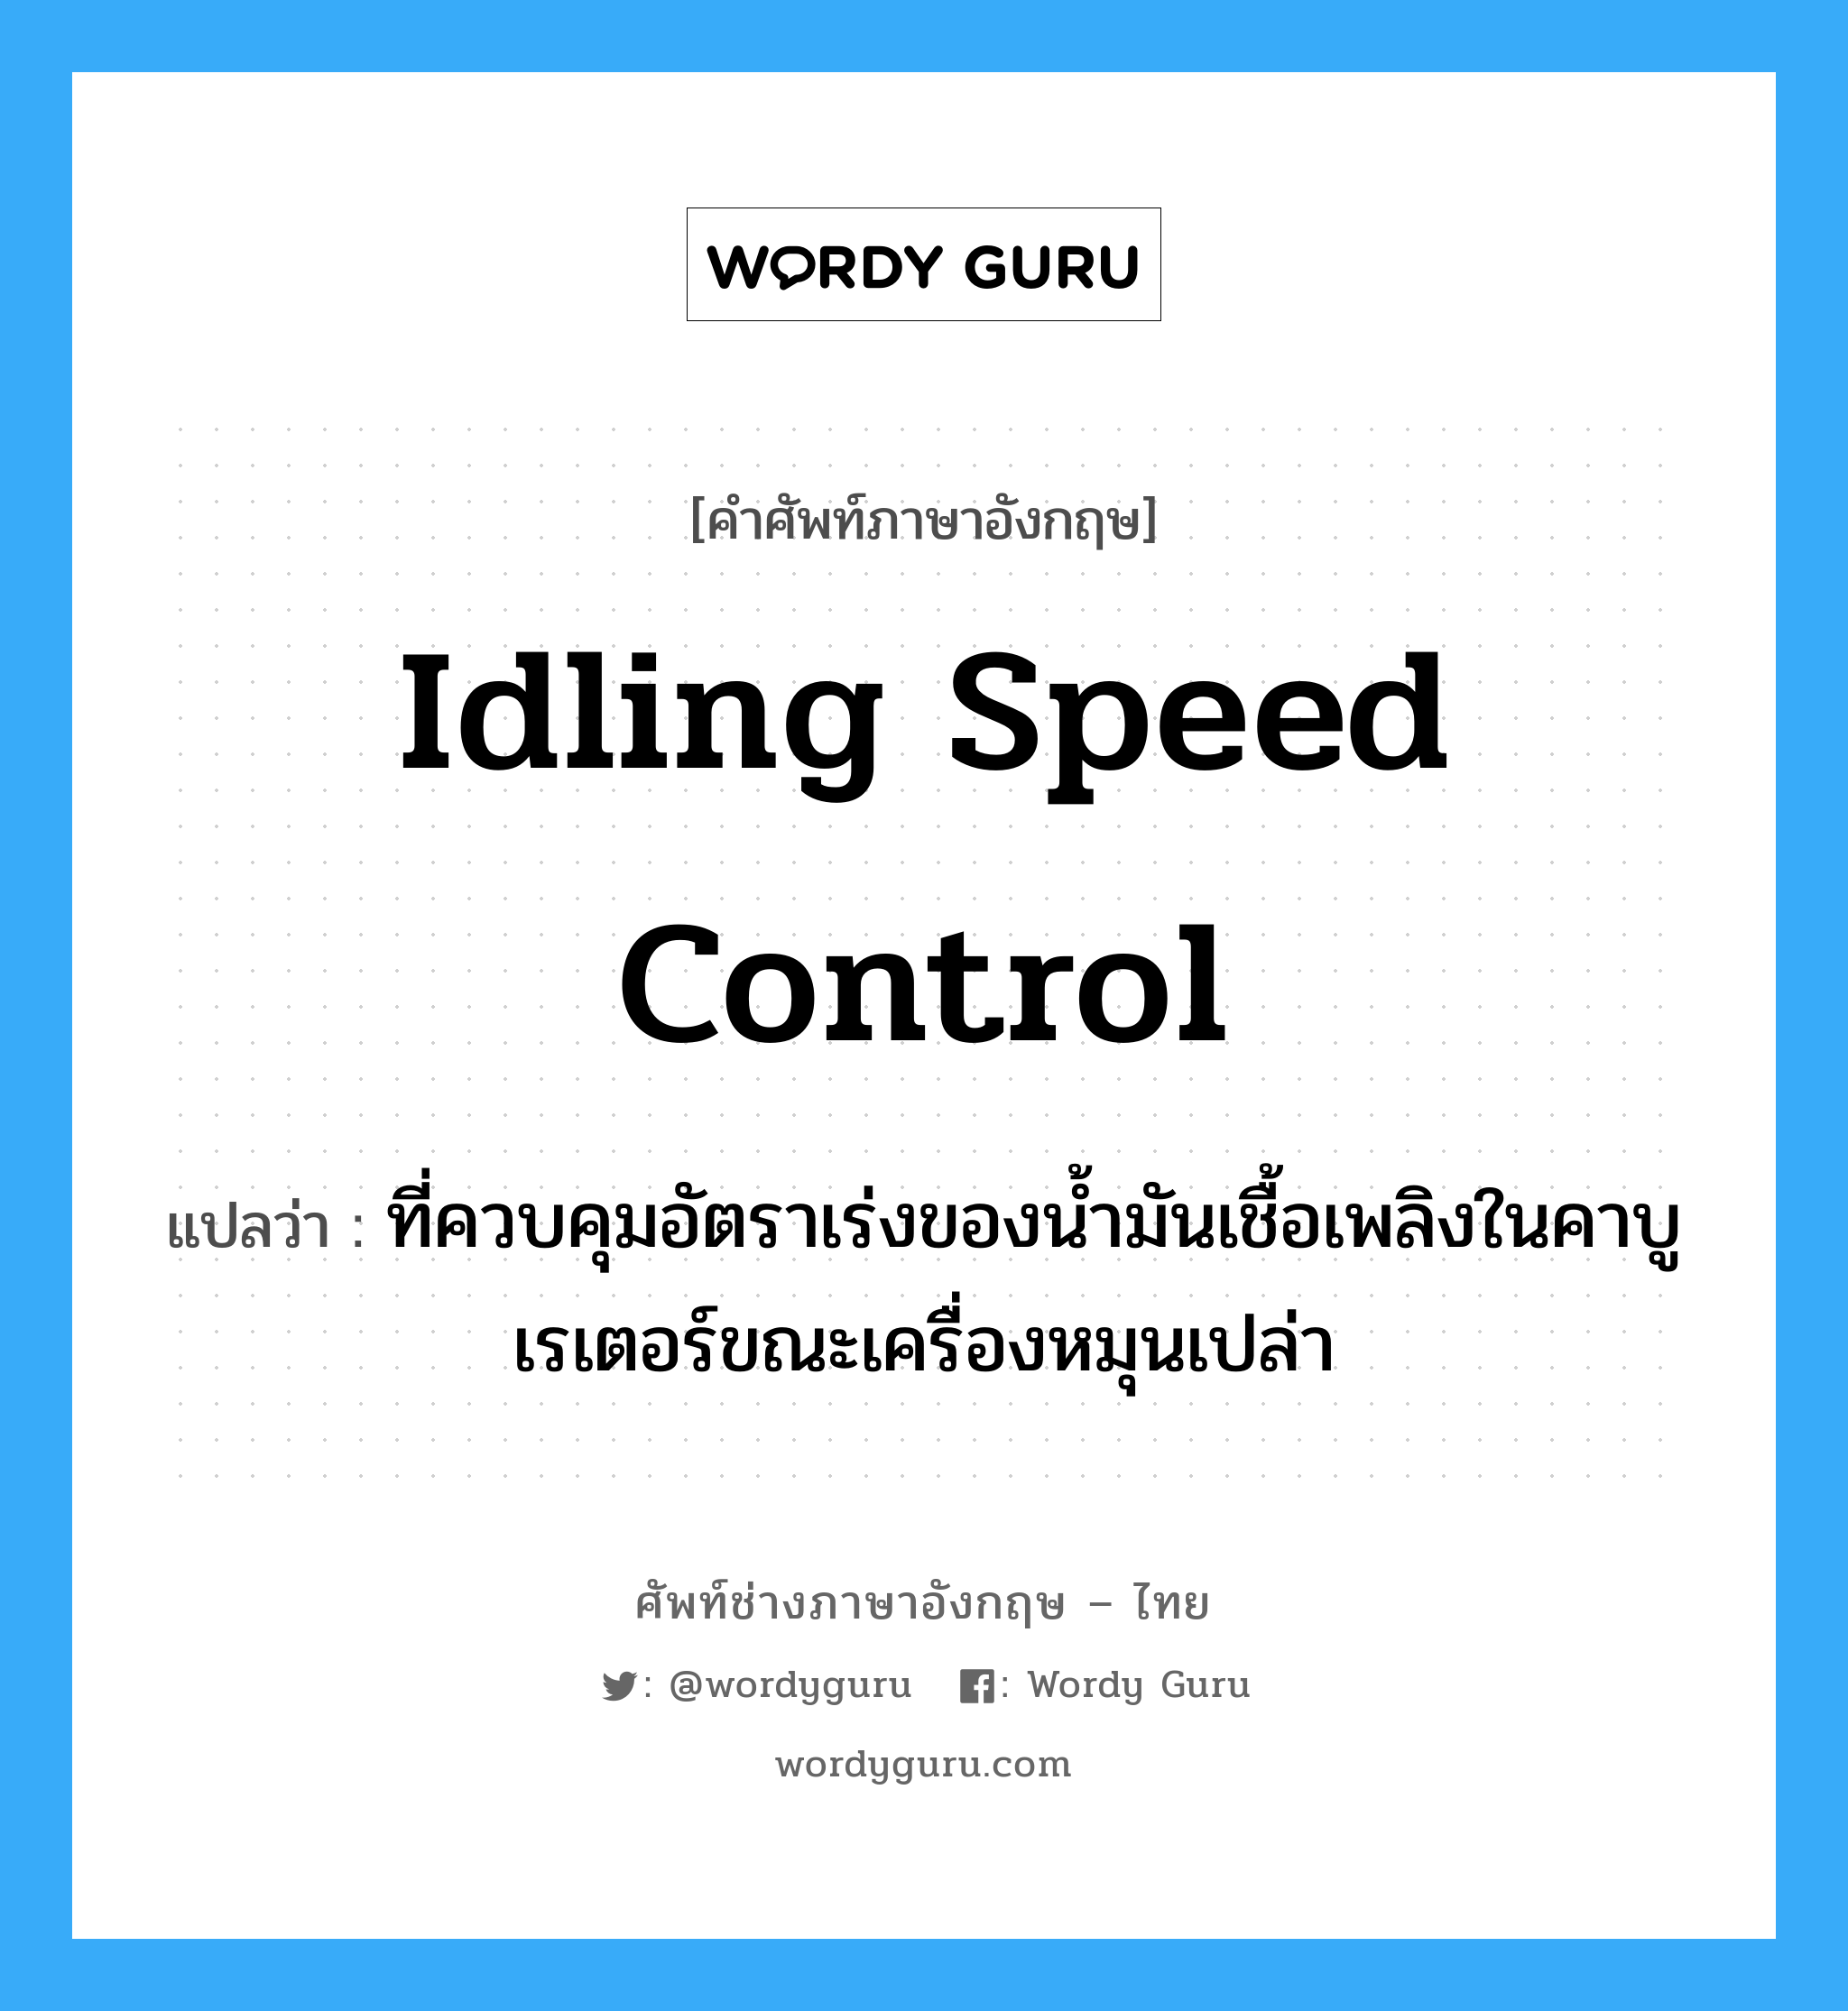 idling speed control แปลว่า?, คำศัพท์ช่างภาษาอังกฤษ - ไทย idling speed control คำศัพท์ภาษาอังกฤษ idling speed control แปลว่า ที่ควบคุมอัตราเร่งของน้ำมันเชื้อเพลิงในคาบูเรเตอร์ขณะเครื่องหมุนเปล่า